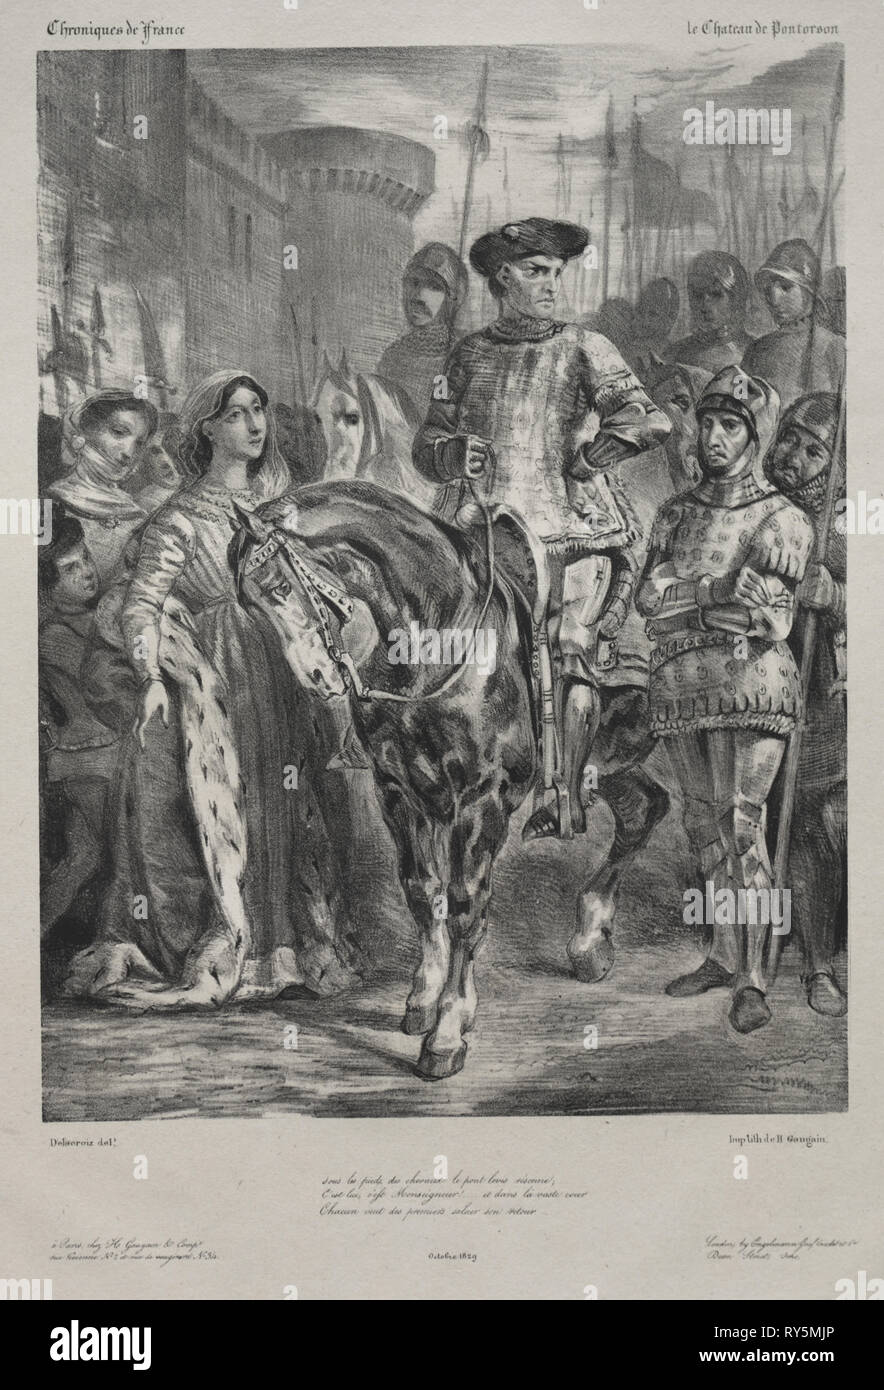 Duguesclin, 1829. Eugène Delacroix (francese, 1798 - 1863). Litografia con chine collé; foglio: 48 x 34,7 cm (18 7/8 x 13 11/16 in.); immagine: 27,2 x 20,4 cm (10 11/16 x 8 1/16 in Foto Stock